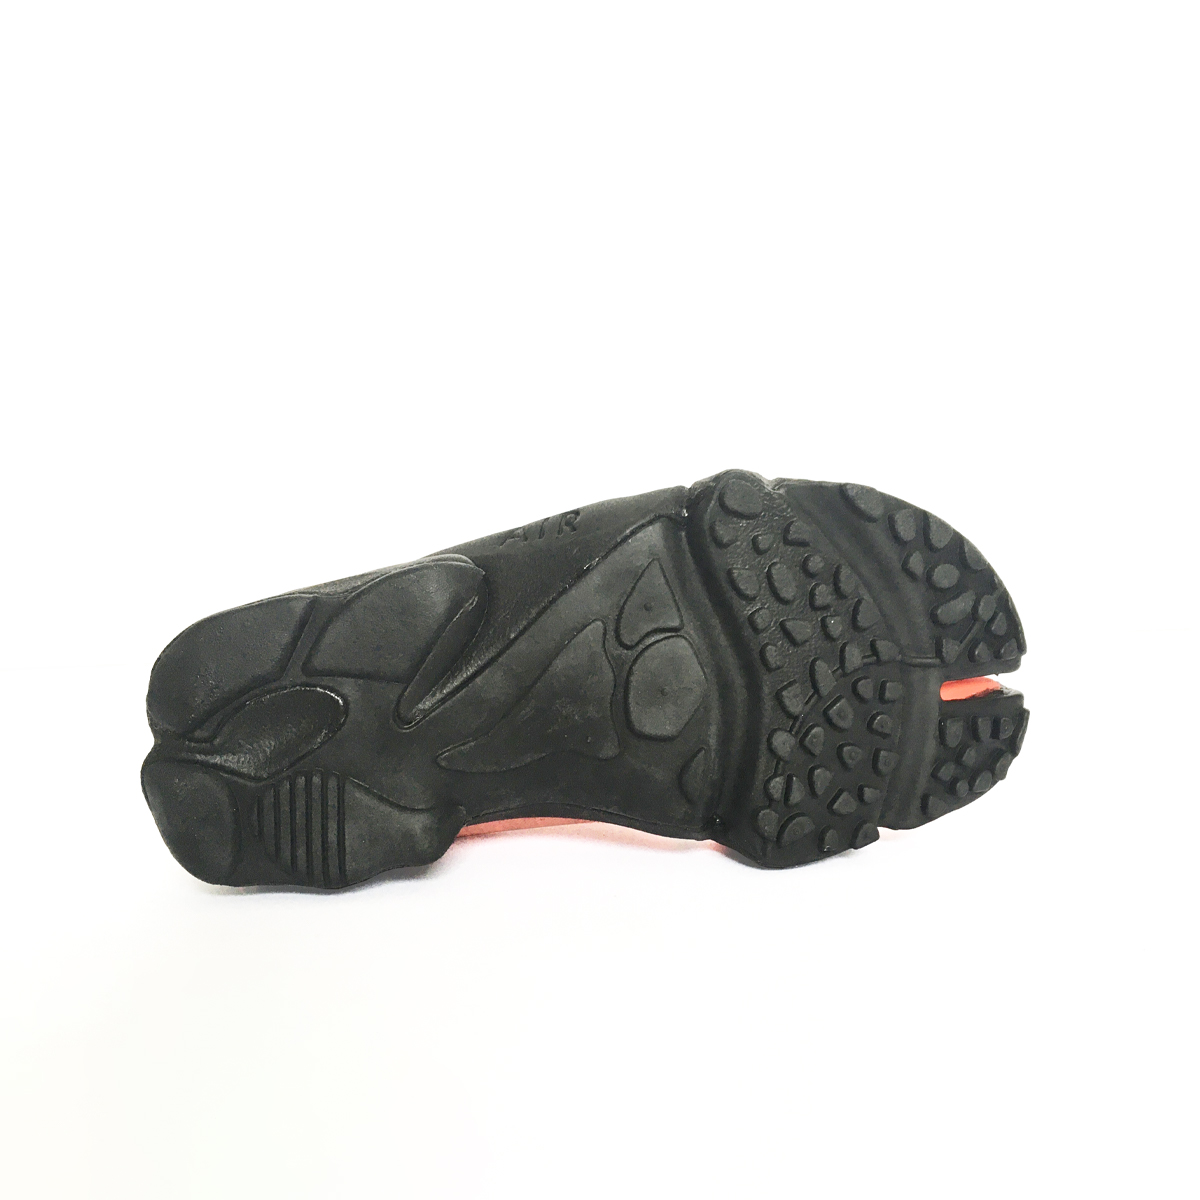 Nike Air Rift Hot Lava black - 8